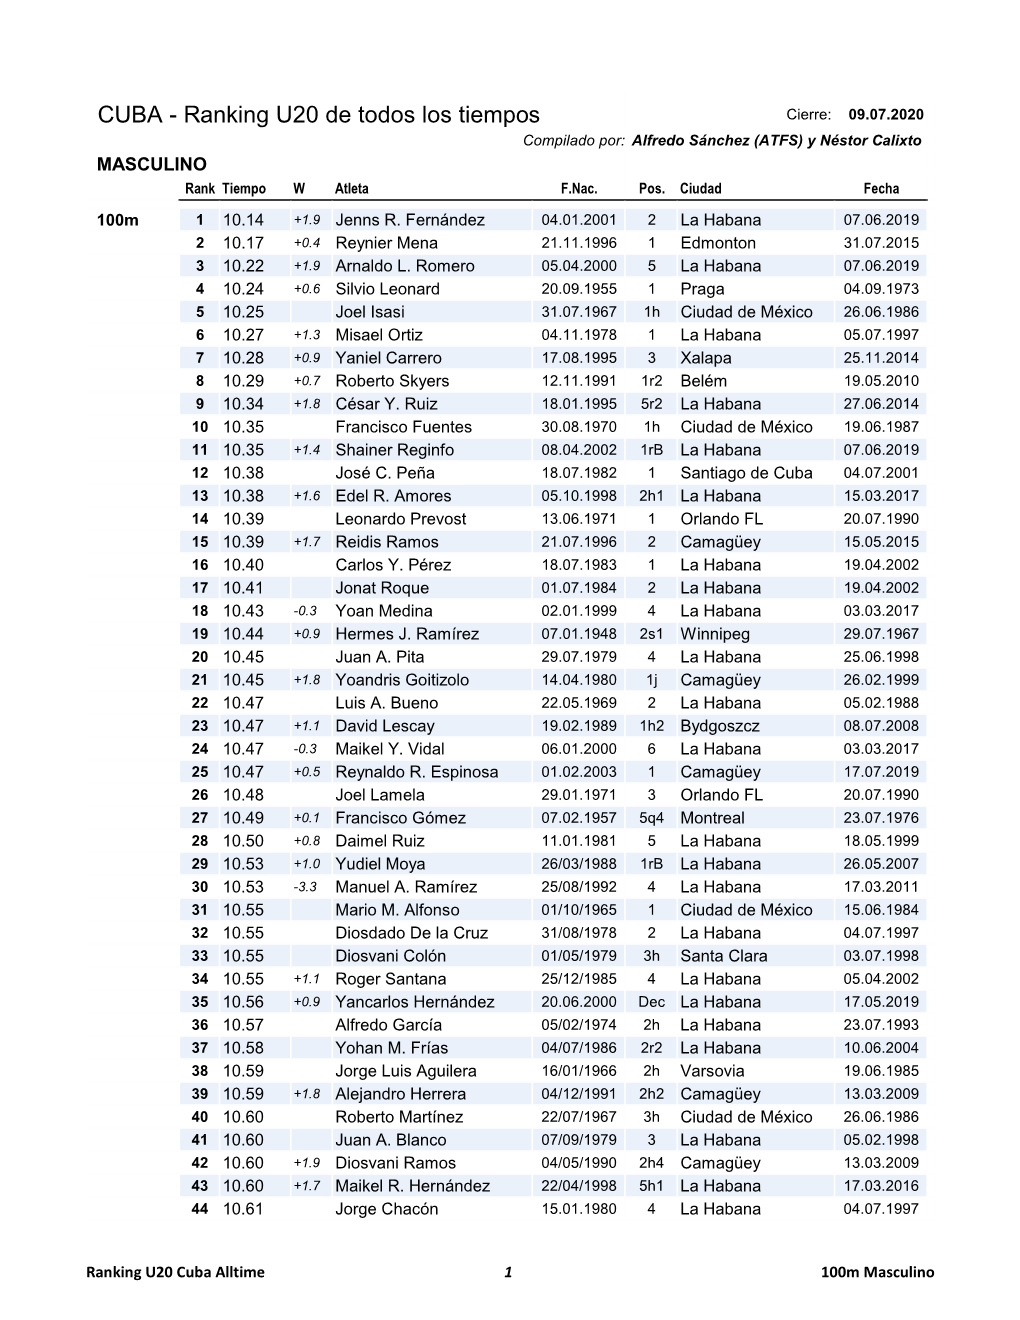 CUBA - Ranking U20 De Todos Los Tiempos Cierre: 09.07.2020 Compilado Por: Alfredo Sánchez (ATFS) Y Néstor Calixto MASCULINO Rank Tiempo W Atleta F.Nac